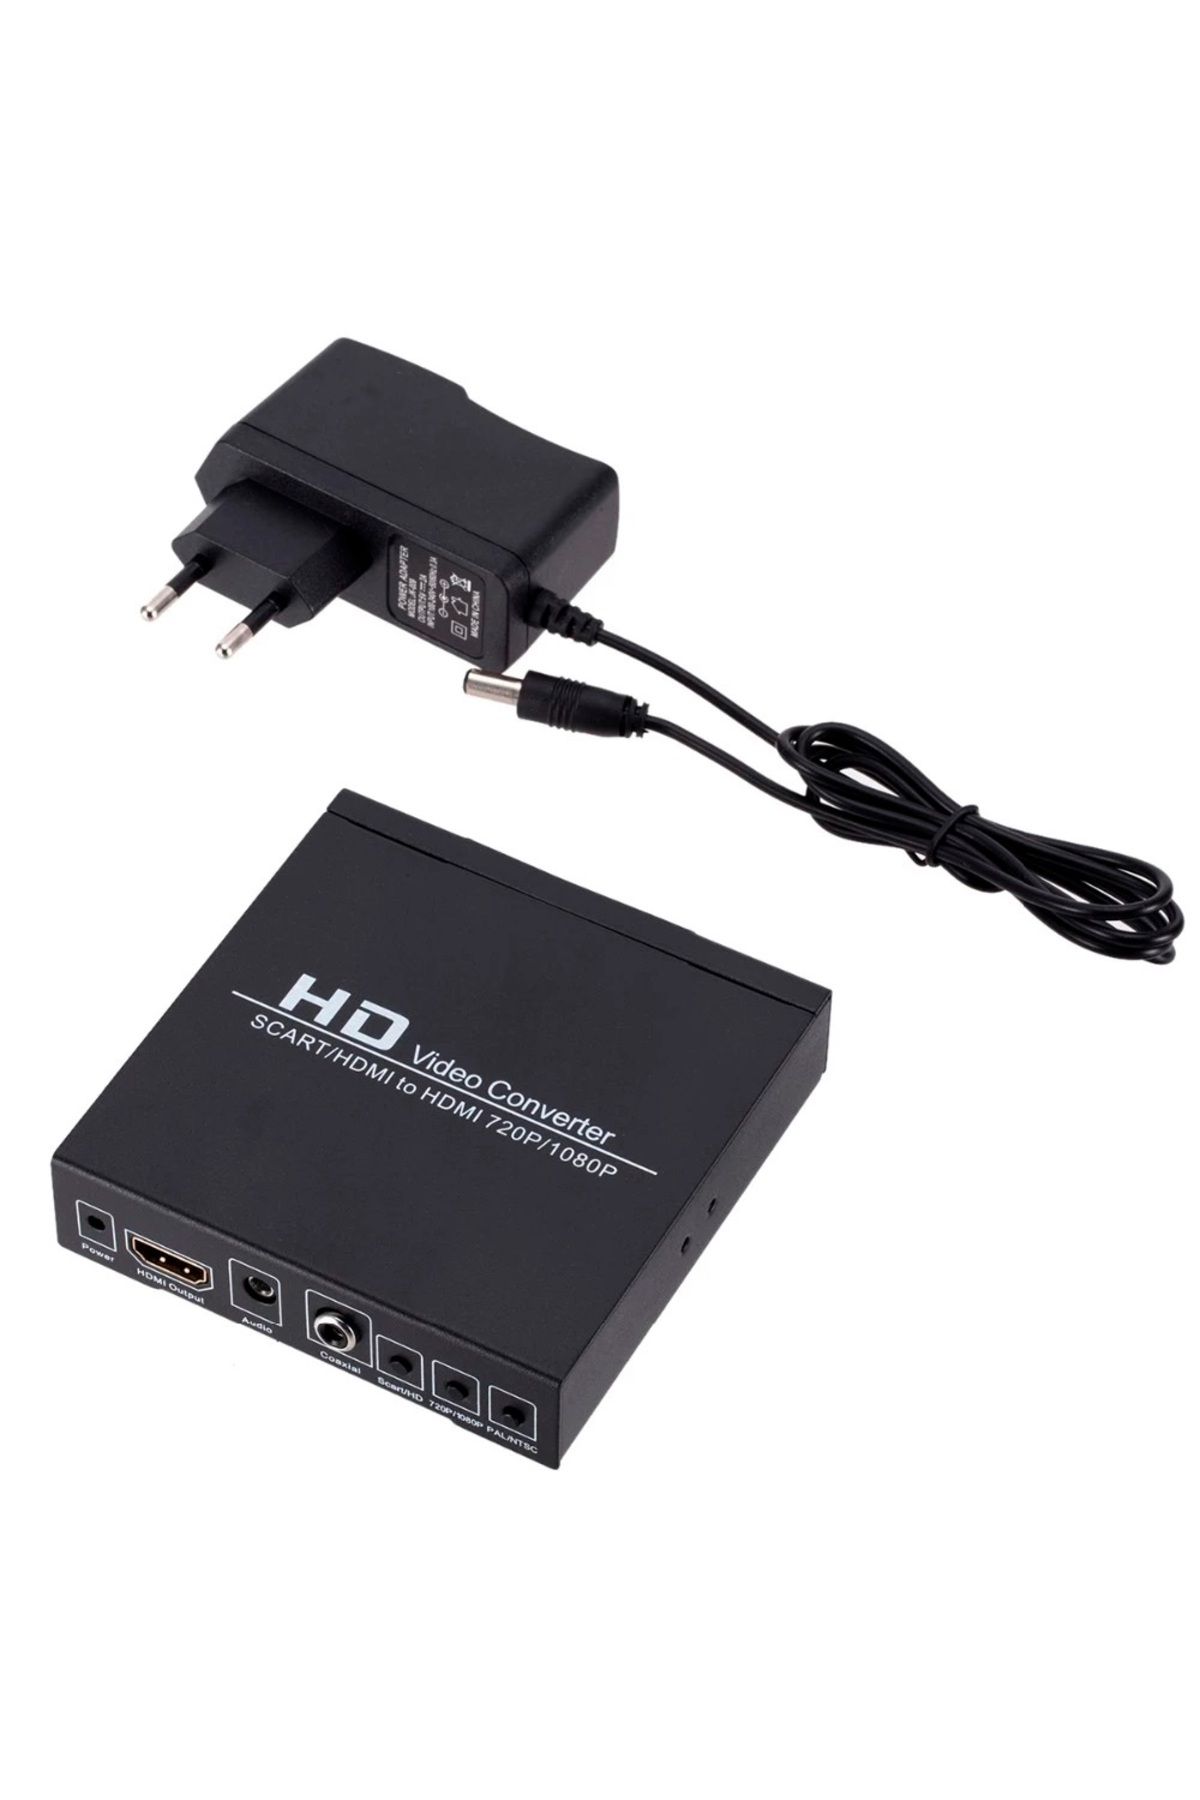 Powermaster PM-14366 ADAPTÖRLÜ SCART-HDMI TO HDMI ÇEVİRİCİ DÖNÜŞTÜRÜCÜ KONVERTÖR